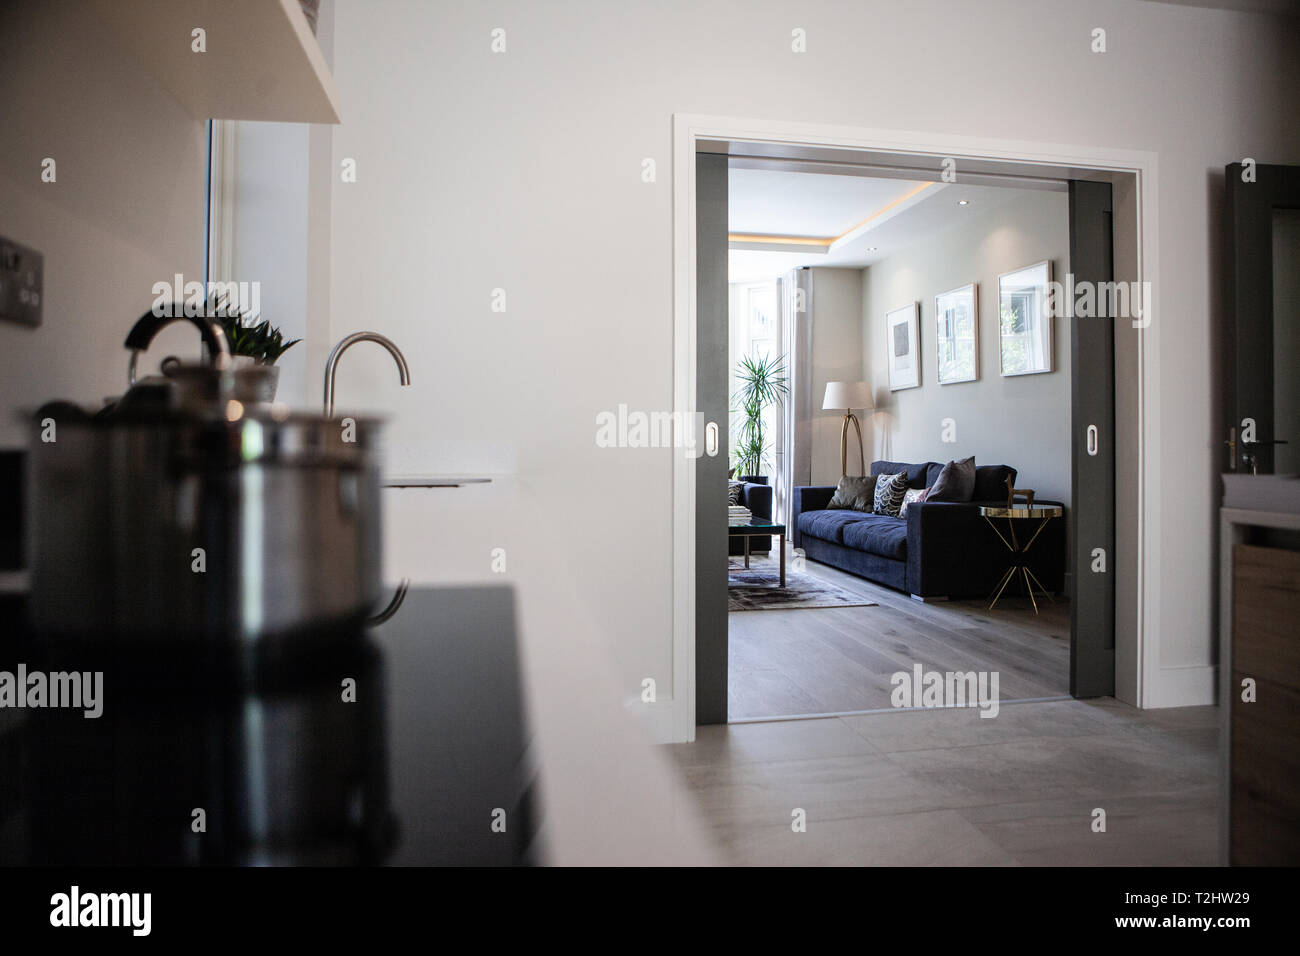 Zona cucina mostra inter sale collegate alla family room nella parte anteriore della casa attraverso due porte. Foto Stock